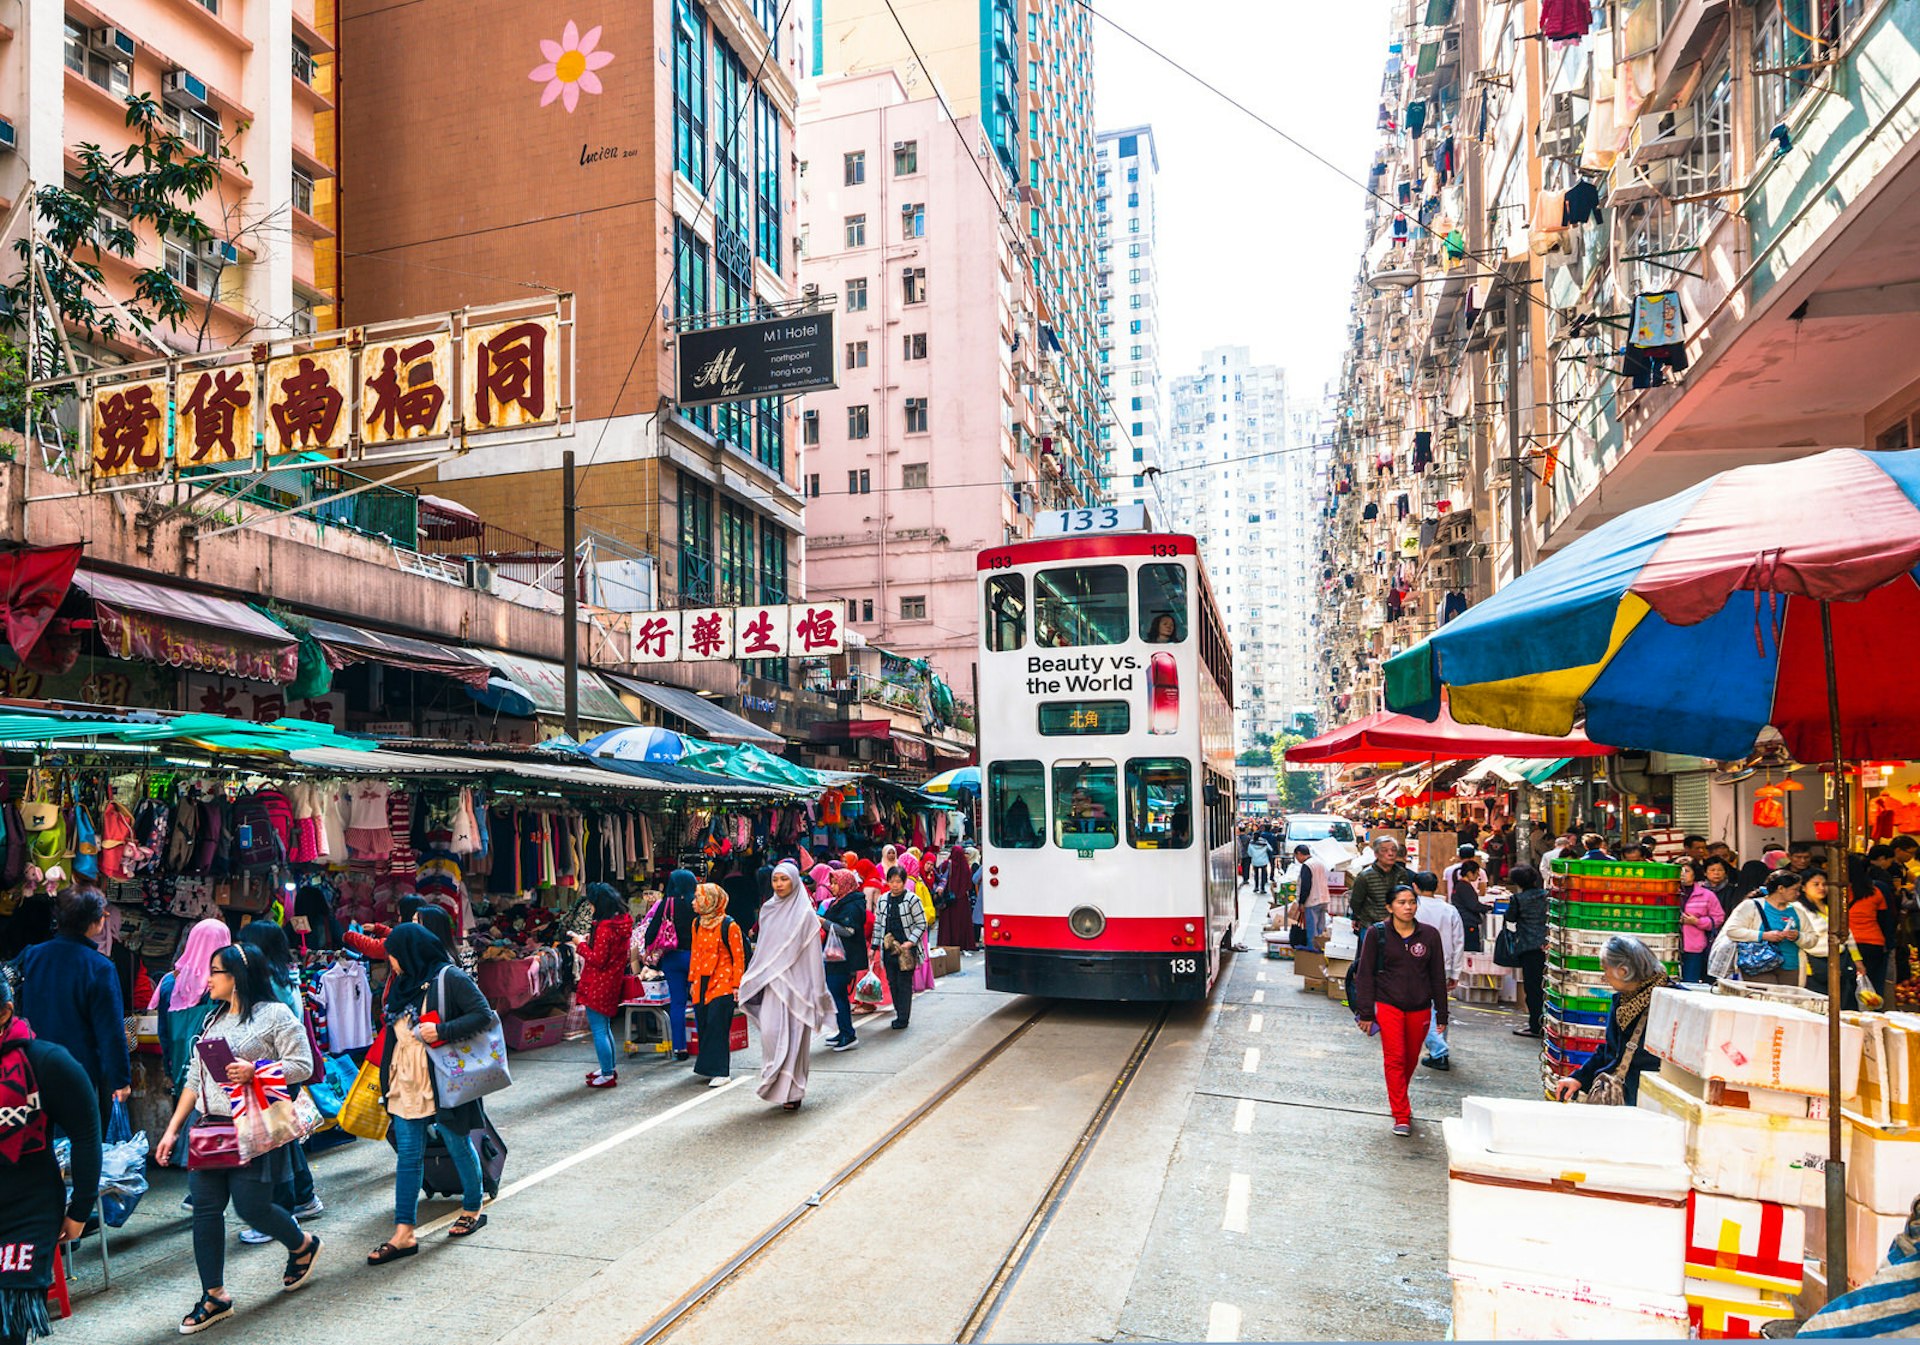 A double-decker tram moves through a market in Hong Kong